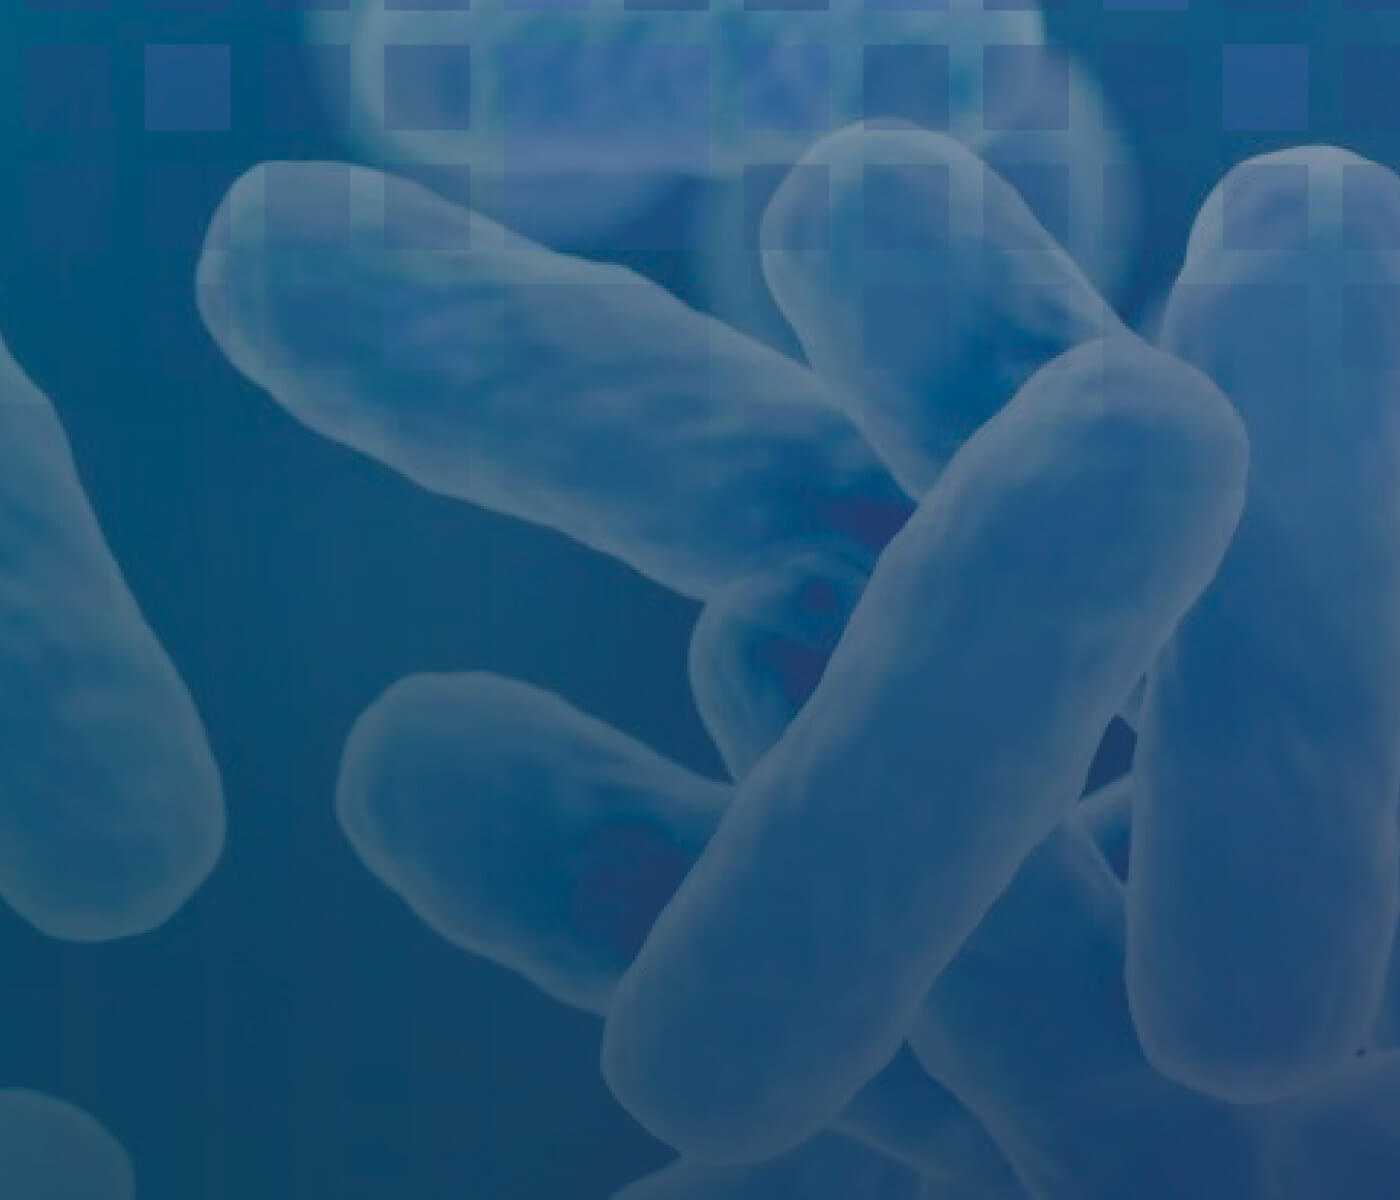 FLORAMAX-B11 HATCHERY e ZYMOSPORE probióticos seguros e com qualidade comprovada sem riscos para saúde única global